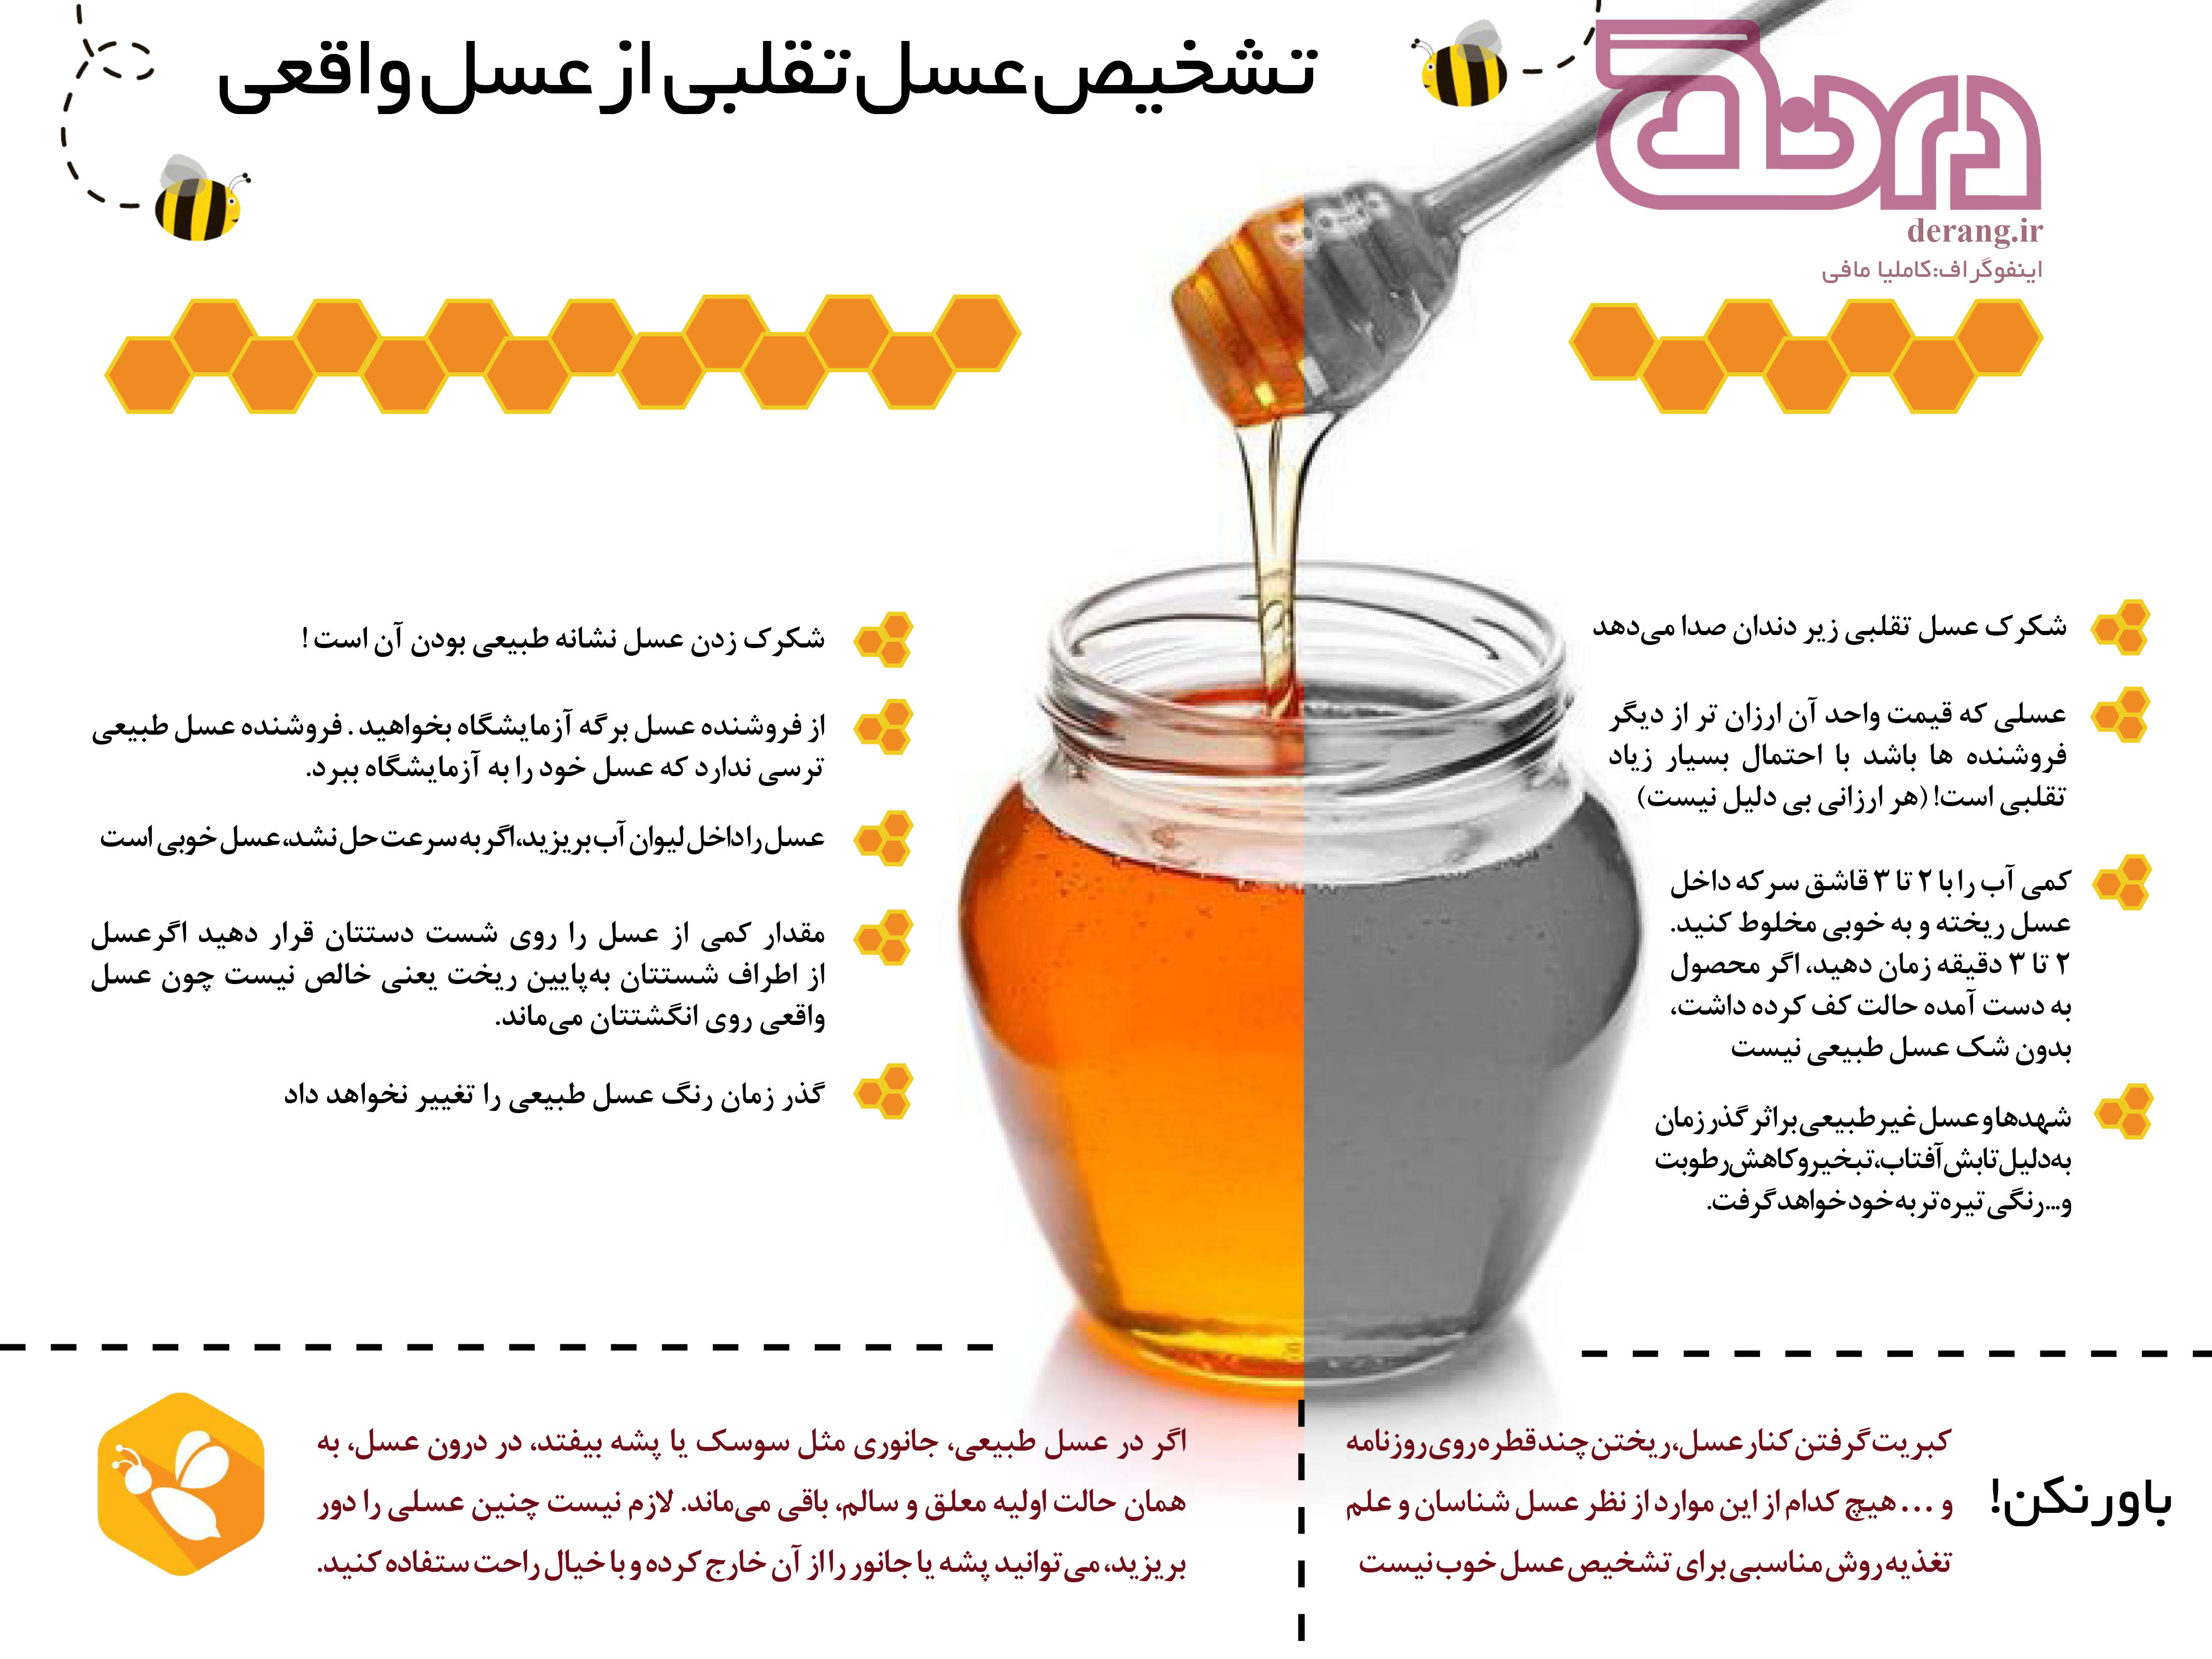 روش تشخيص عسل طبيعي از تقلبي
